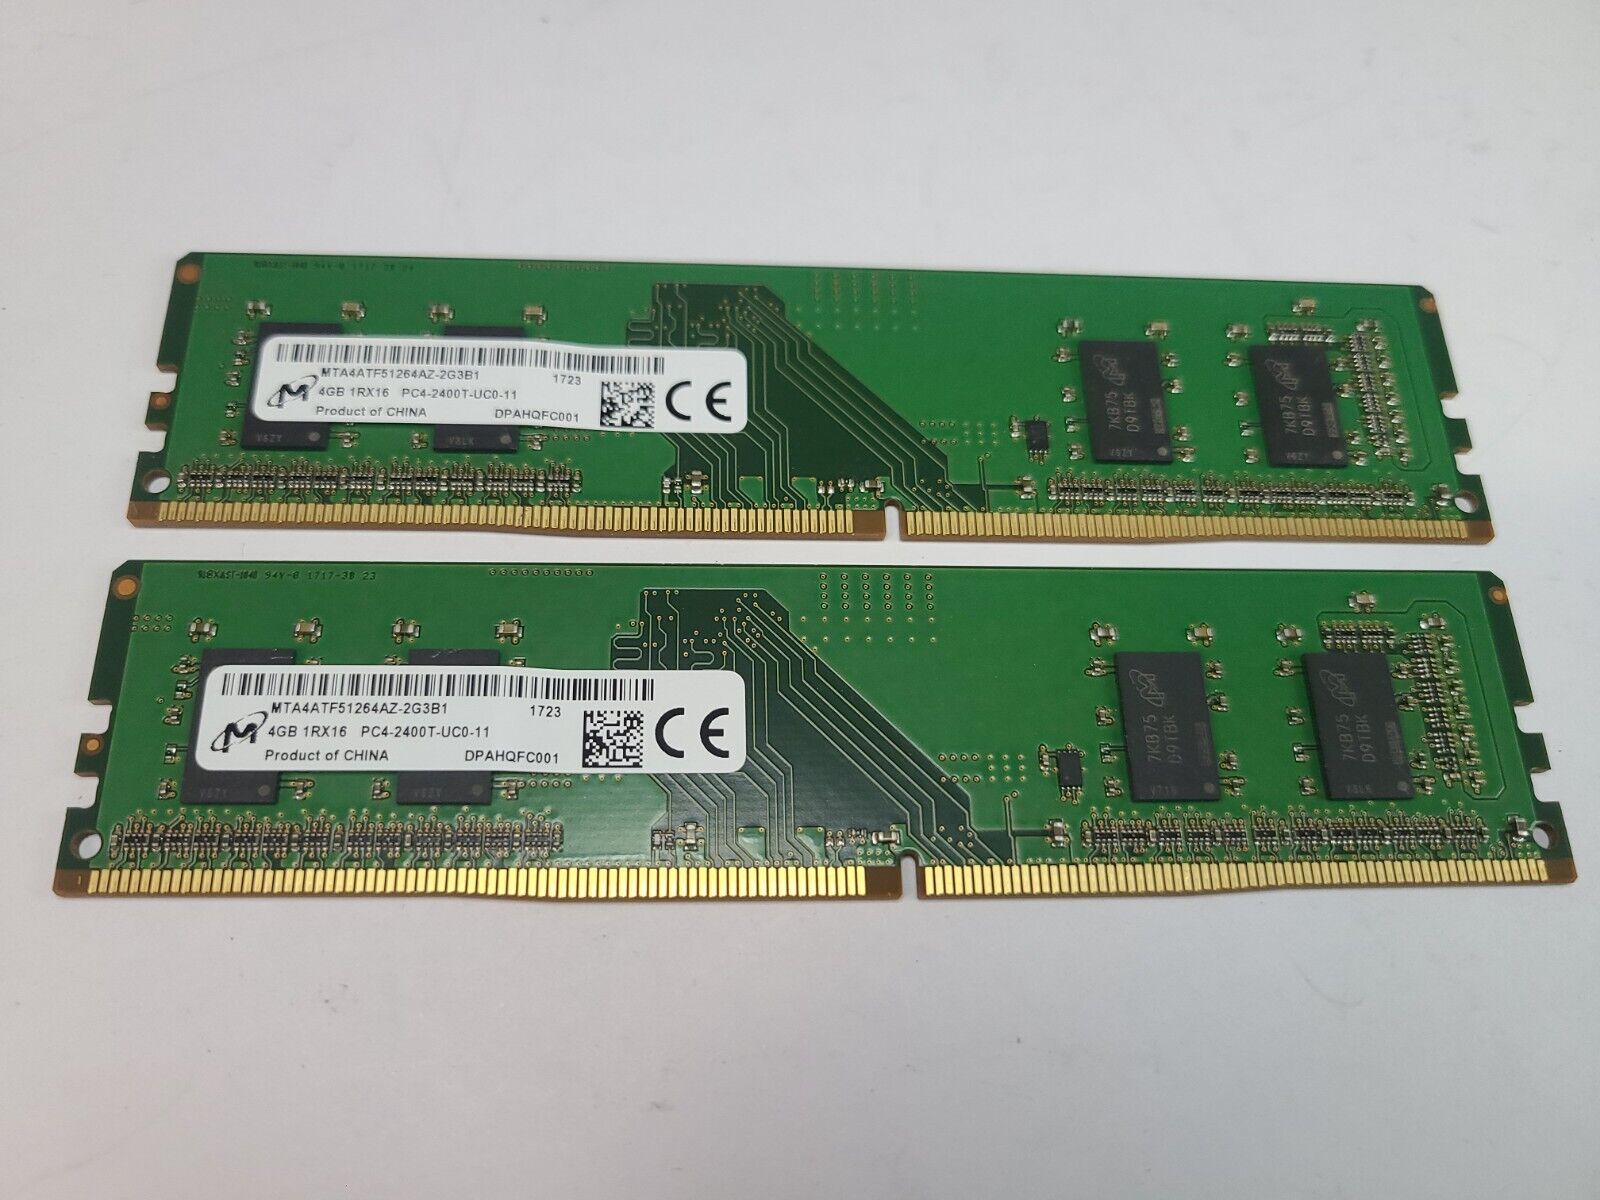 Micron 8GB (2x4GB) DDR4 2400MHz Desktop Ram Memory | MTA4ATF51264AZ-2G3B1 | USA